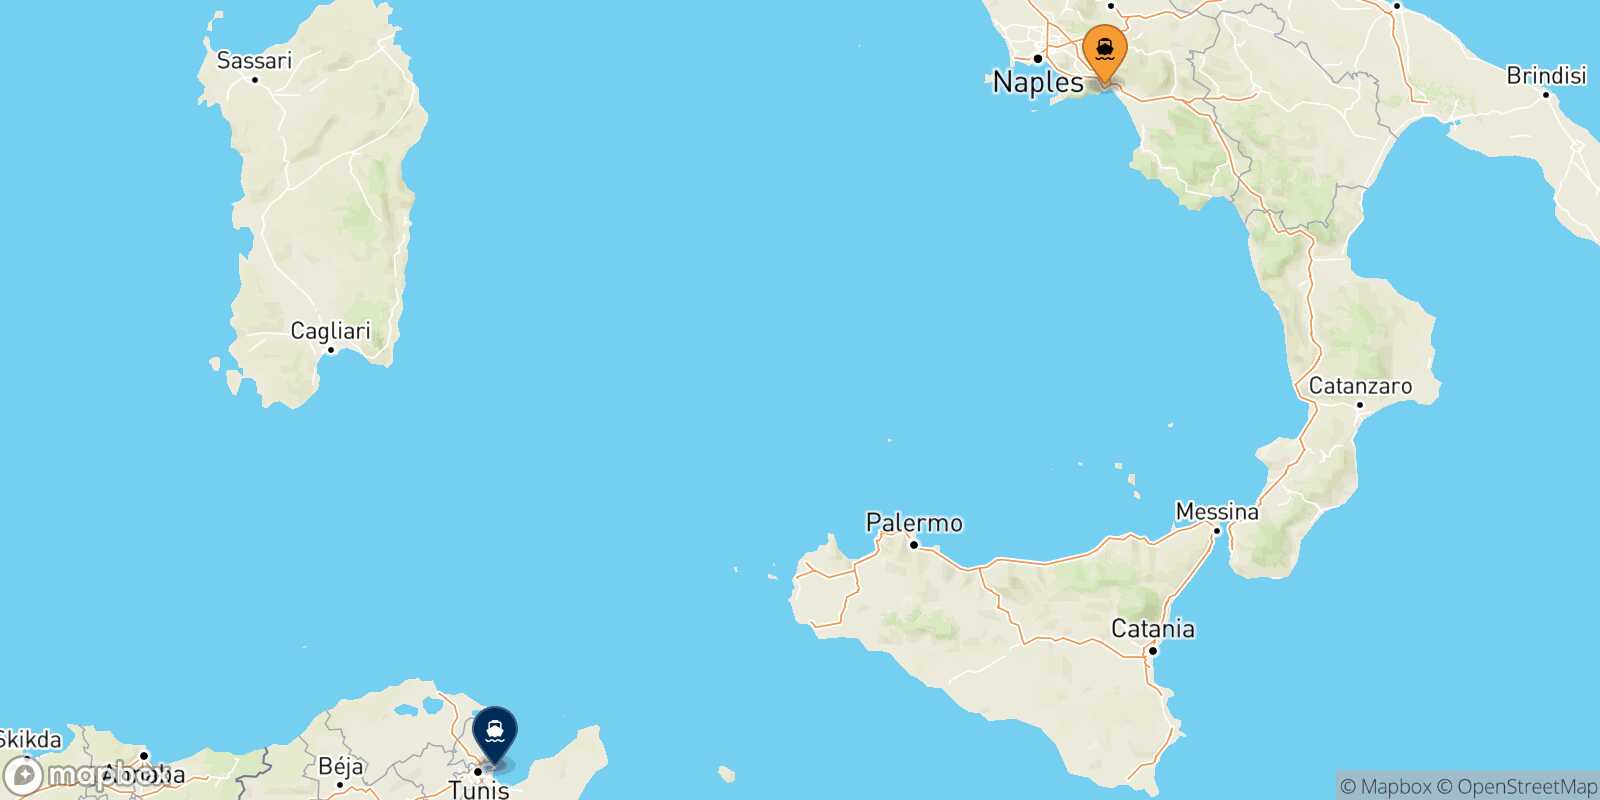 Mappa delle destinazioni raggiungibili da Salerno